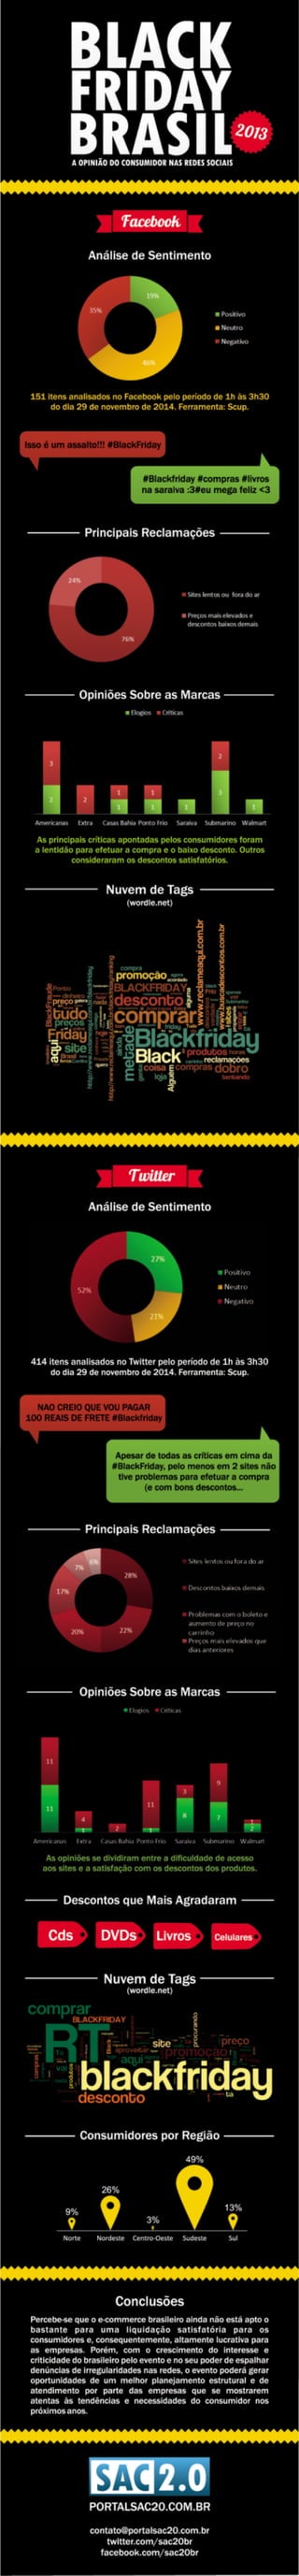 Black Friday Brasil 2013 - Infográfico da opinião do consumidor